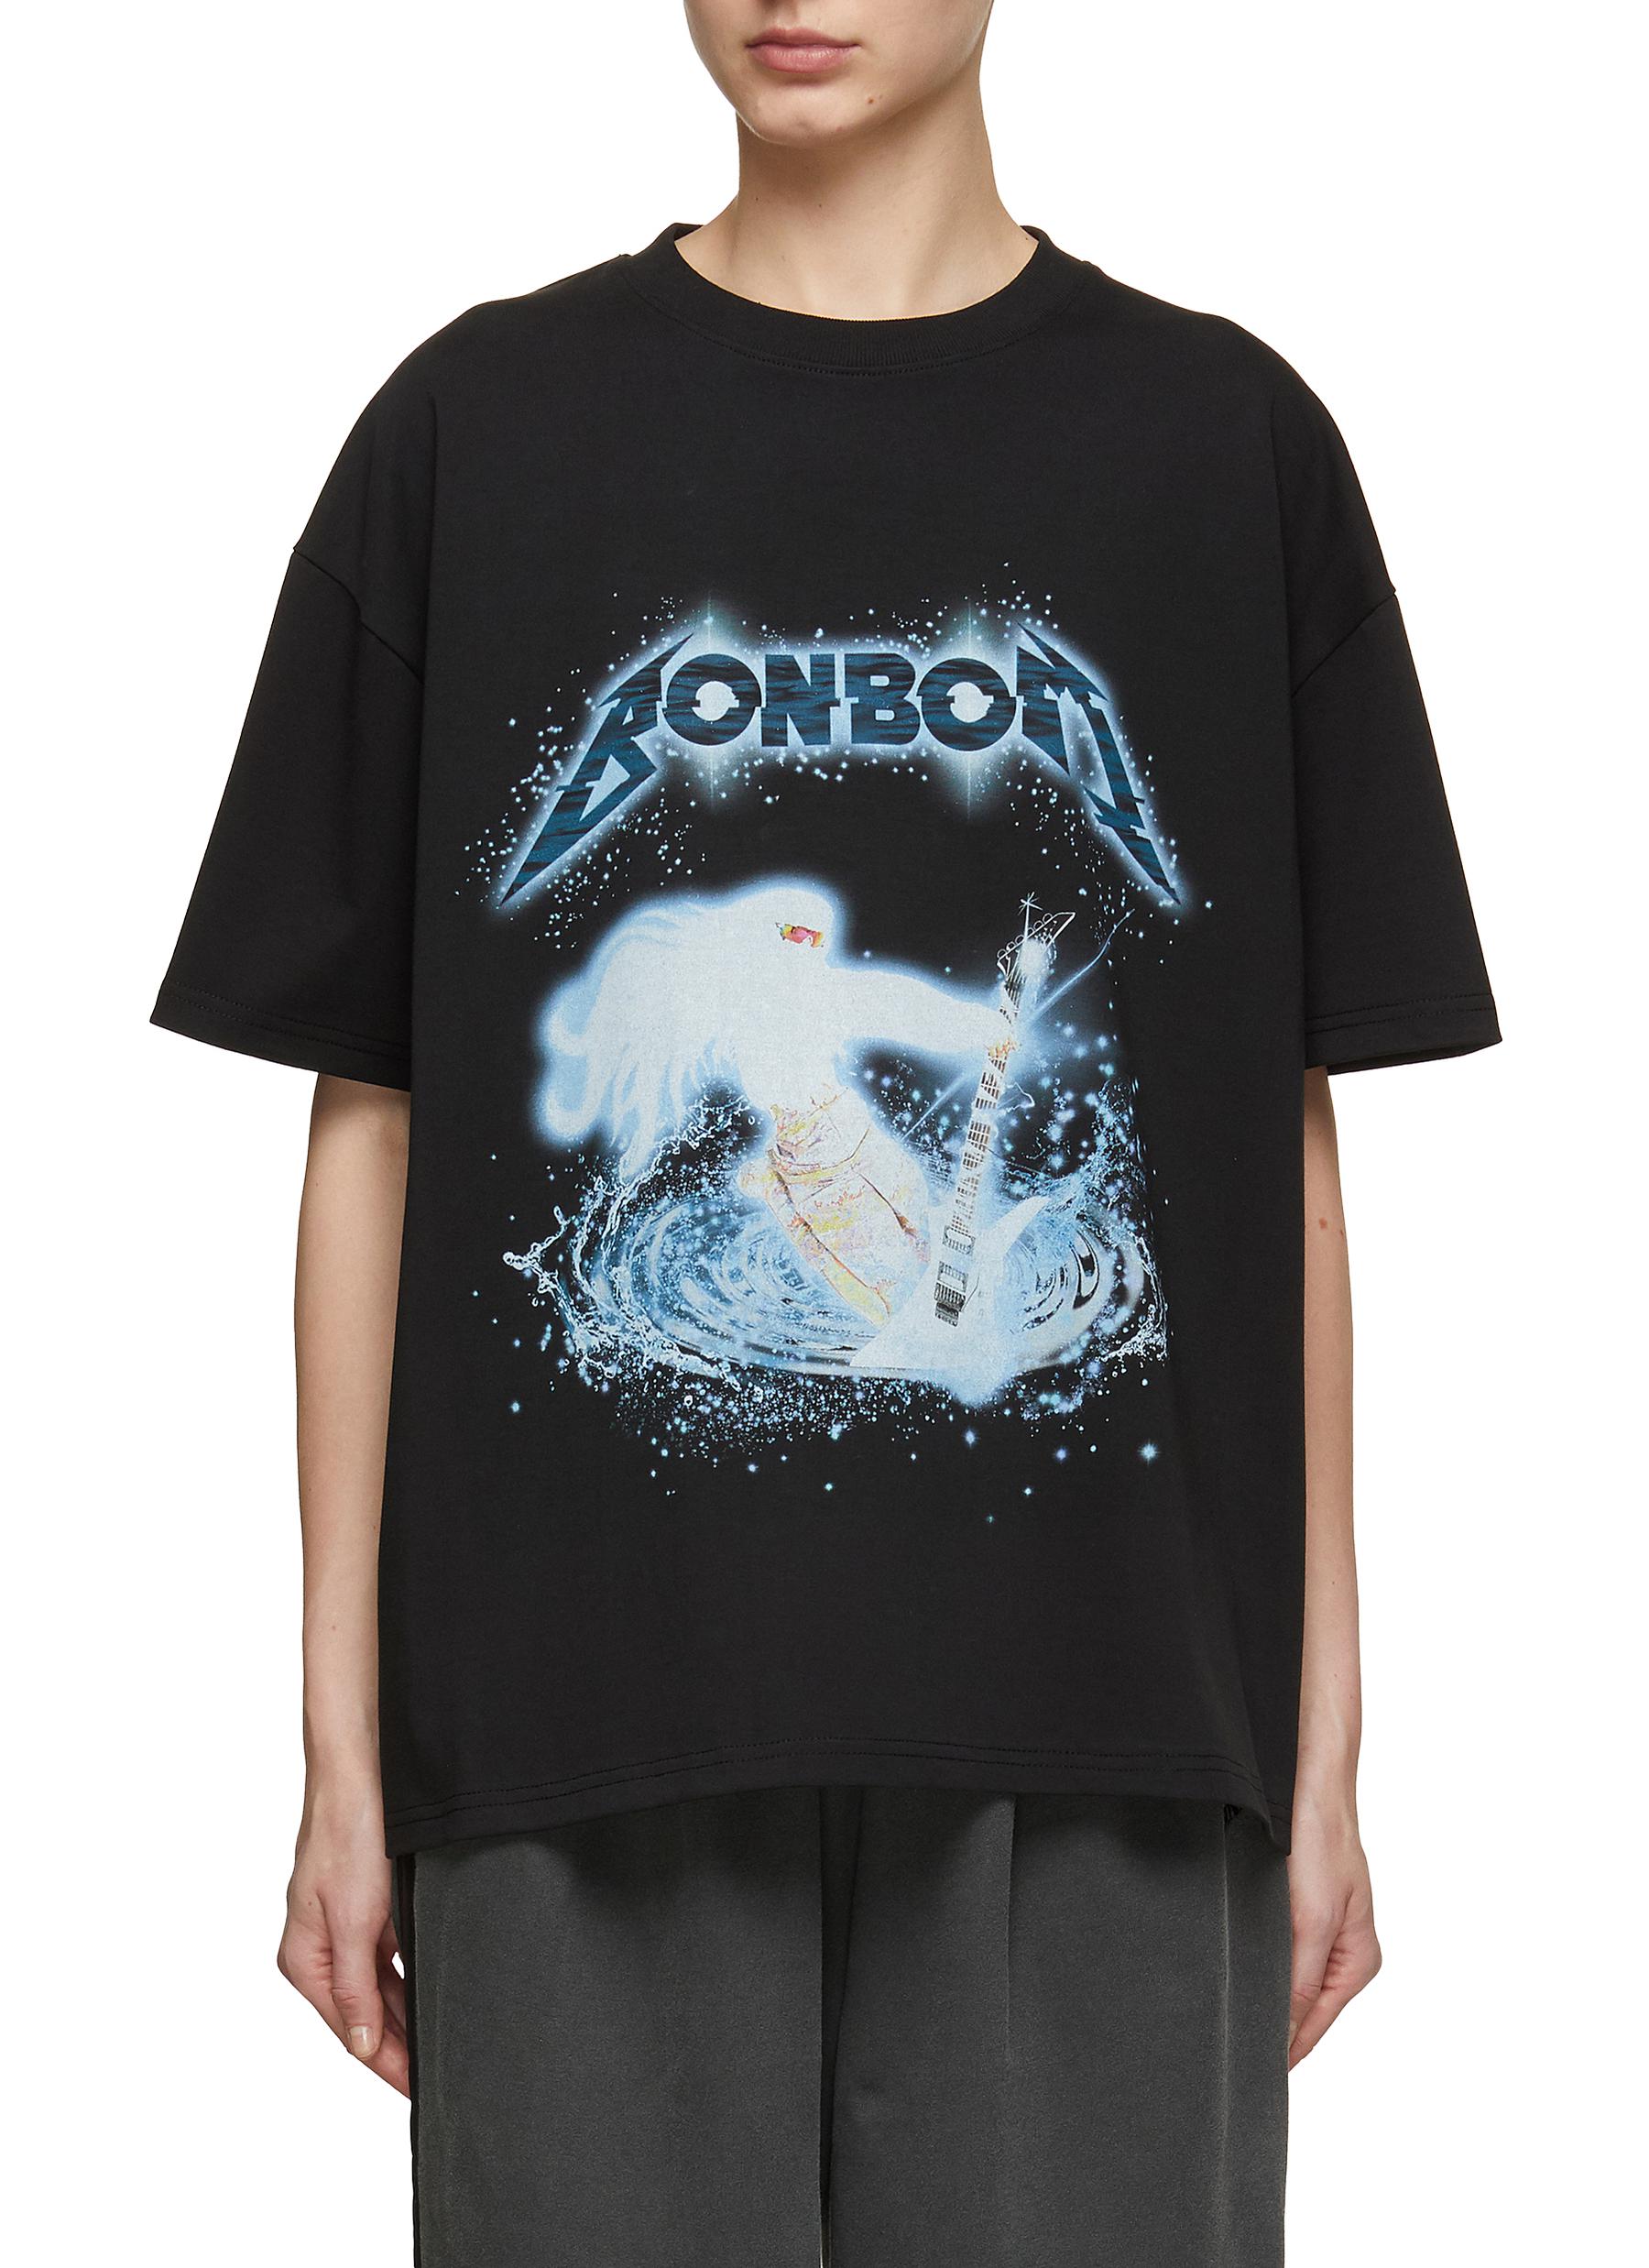 BONBOM | Guitarist In Water Printed Cotton T-Shirt | Women | Lane